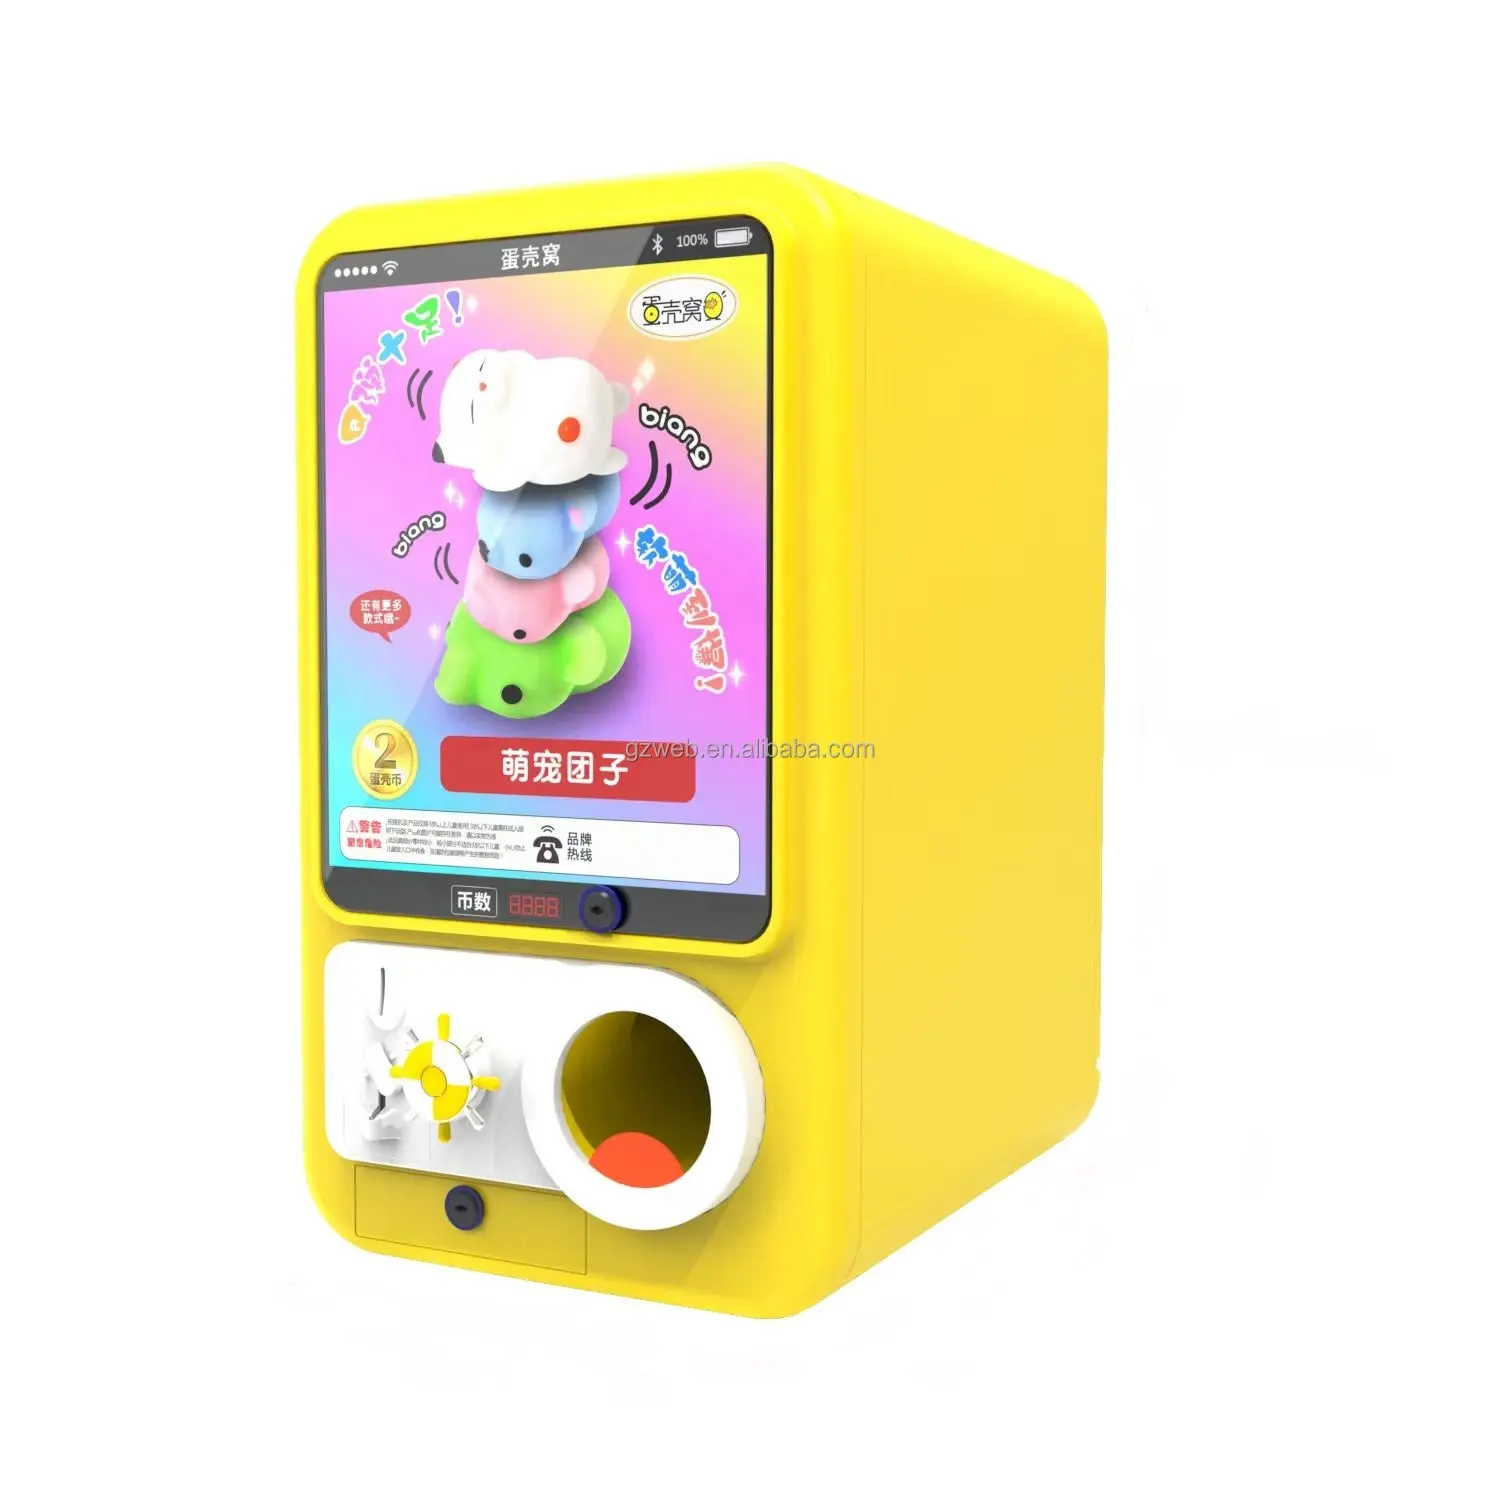 WANGERBAO Gasapon 기계 소스 제조업체 맞춤형 캡슐 장난감 자판기 미니 볼 가챠 기계 가샤폰 자판기